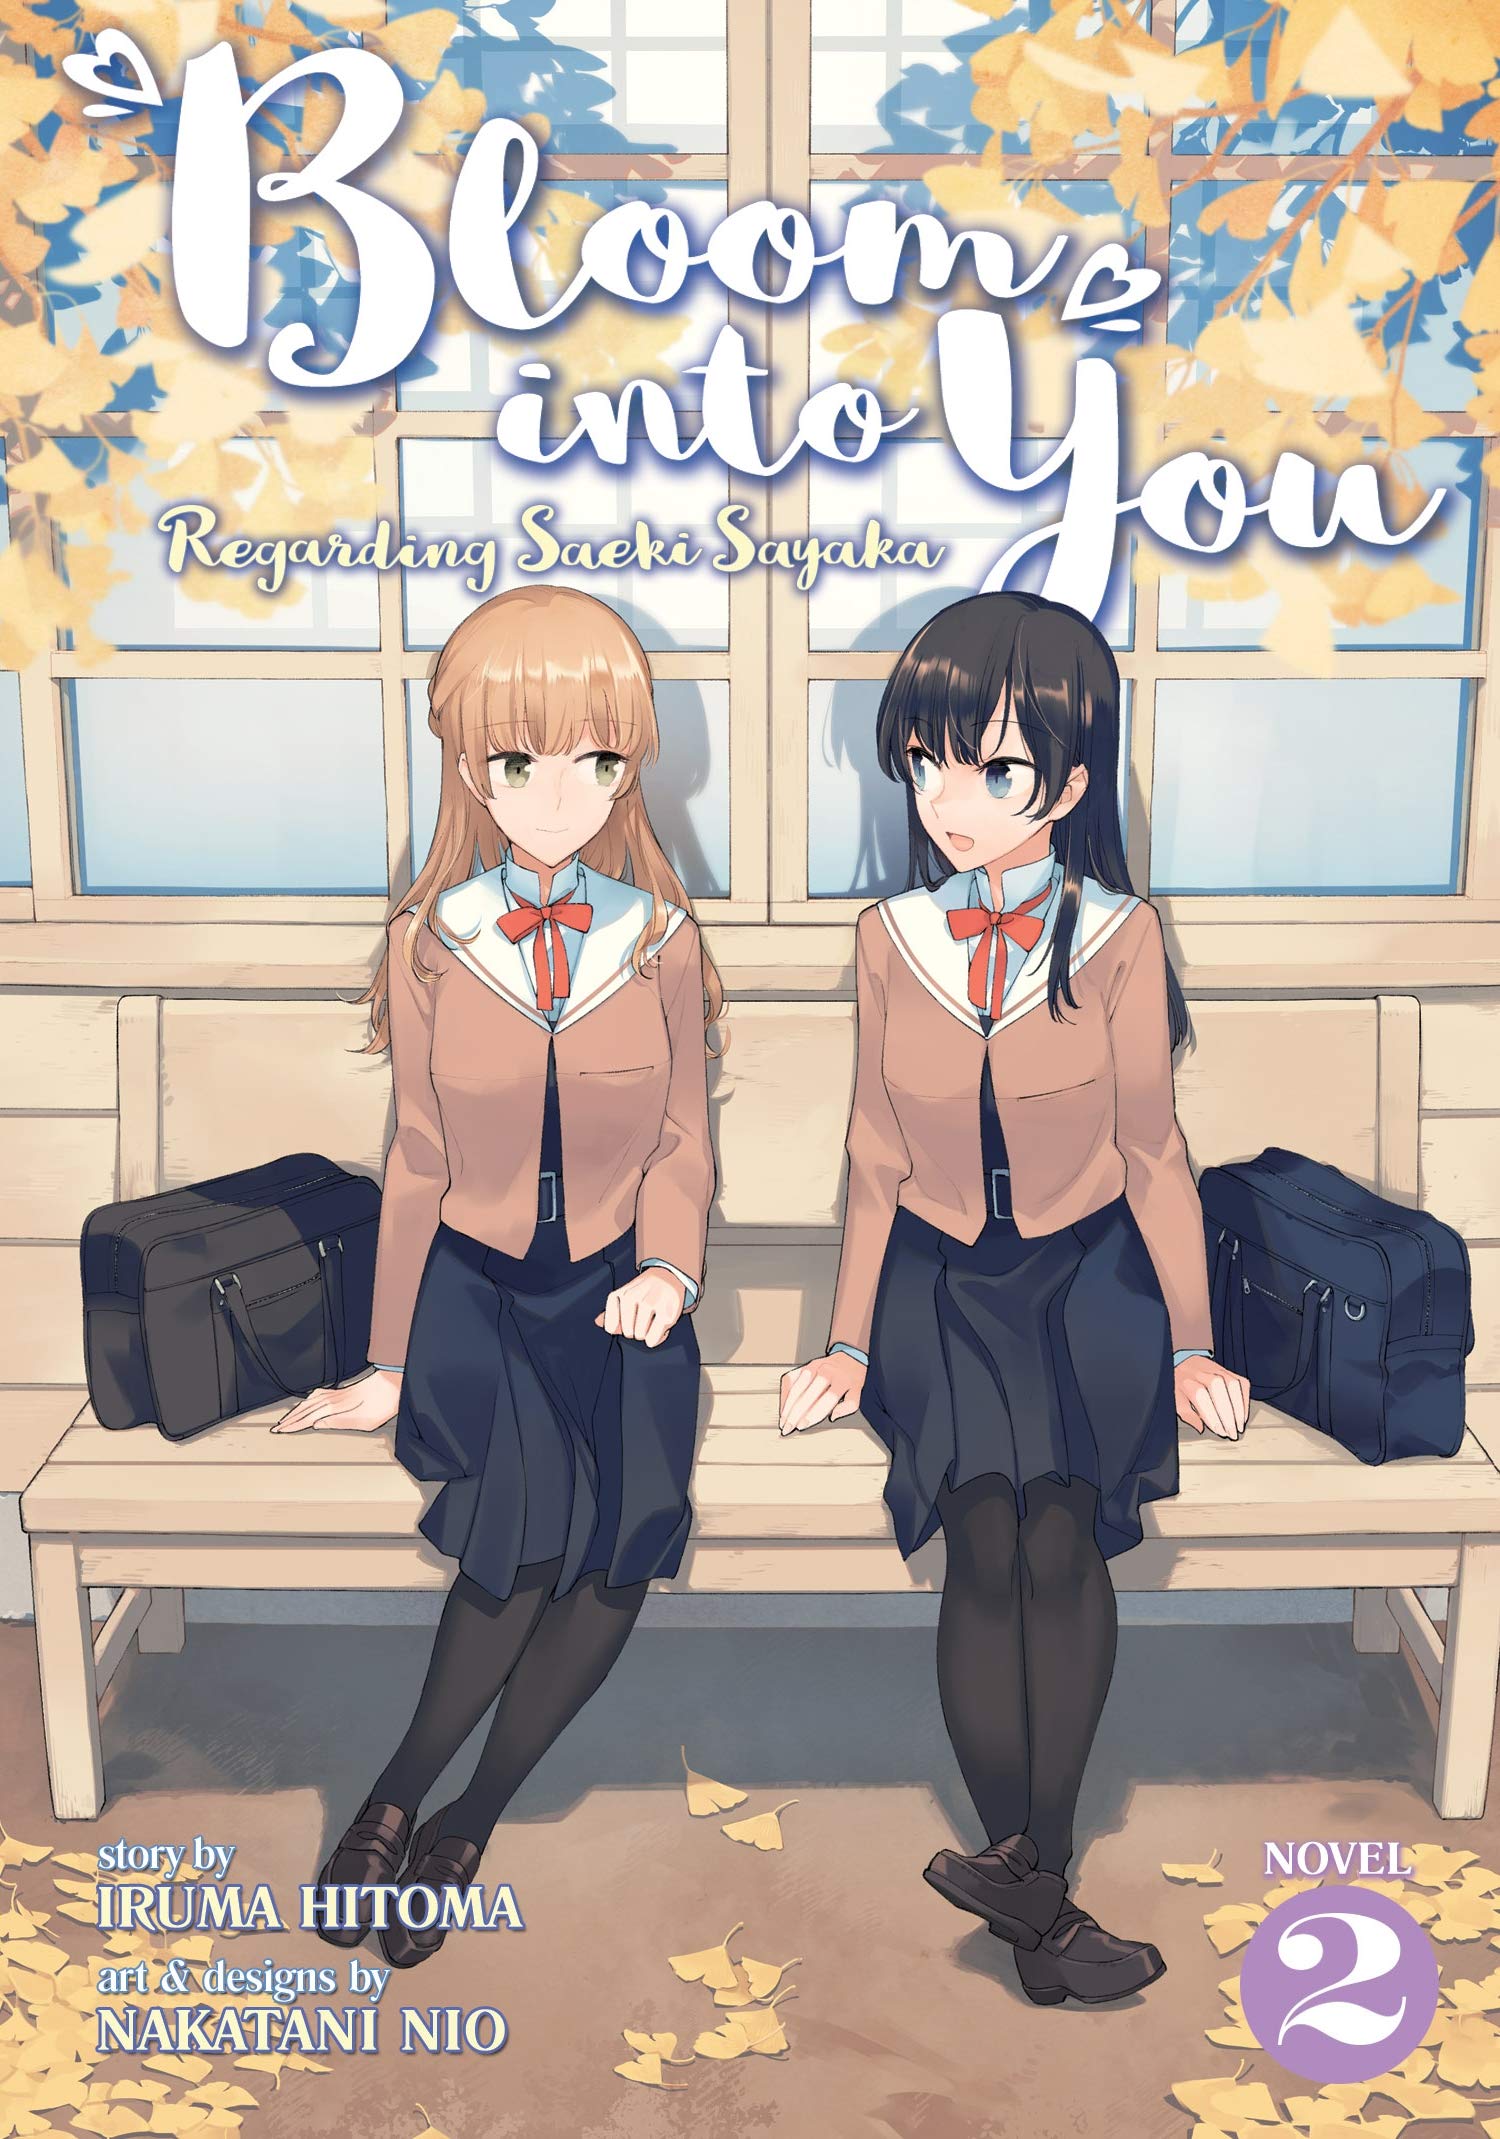 Yagate Kimi ni Naru Saeki Sayaka ni Tsuite (Bloom Into You: Regarding Saeki  Sayaka) · AniList